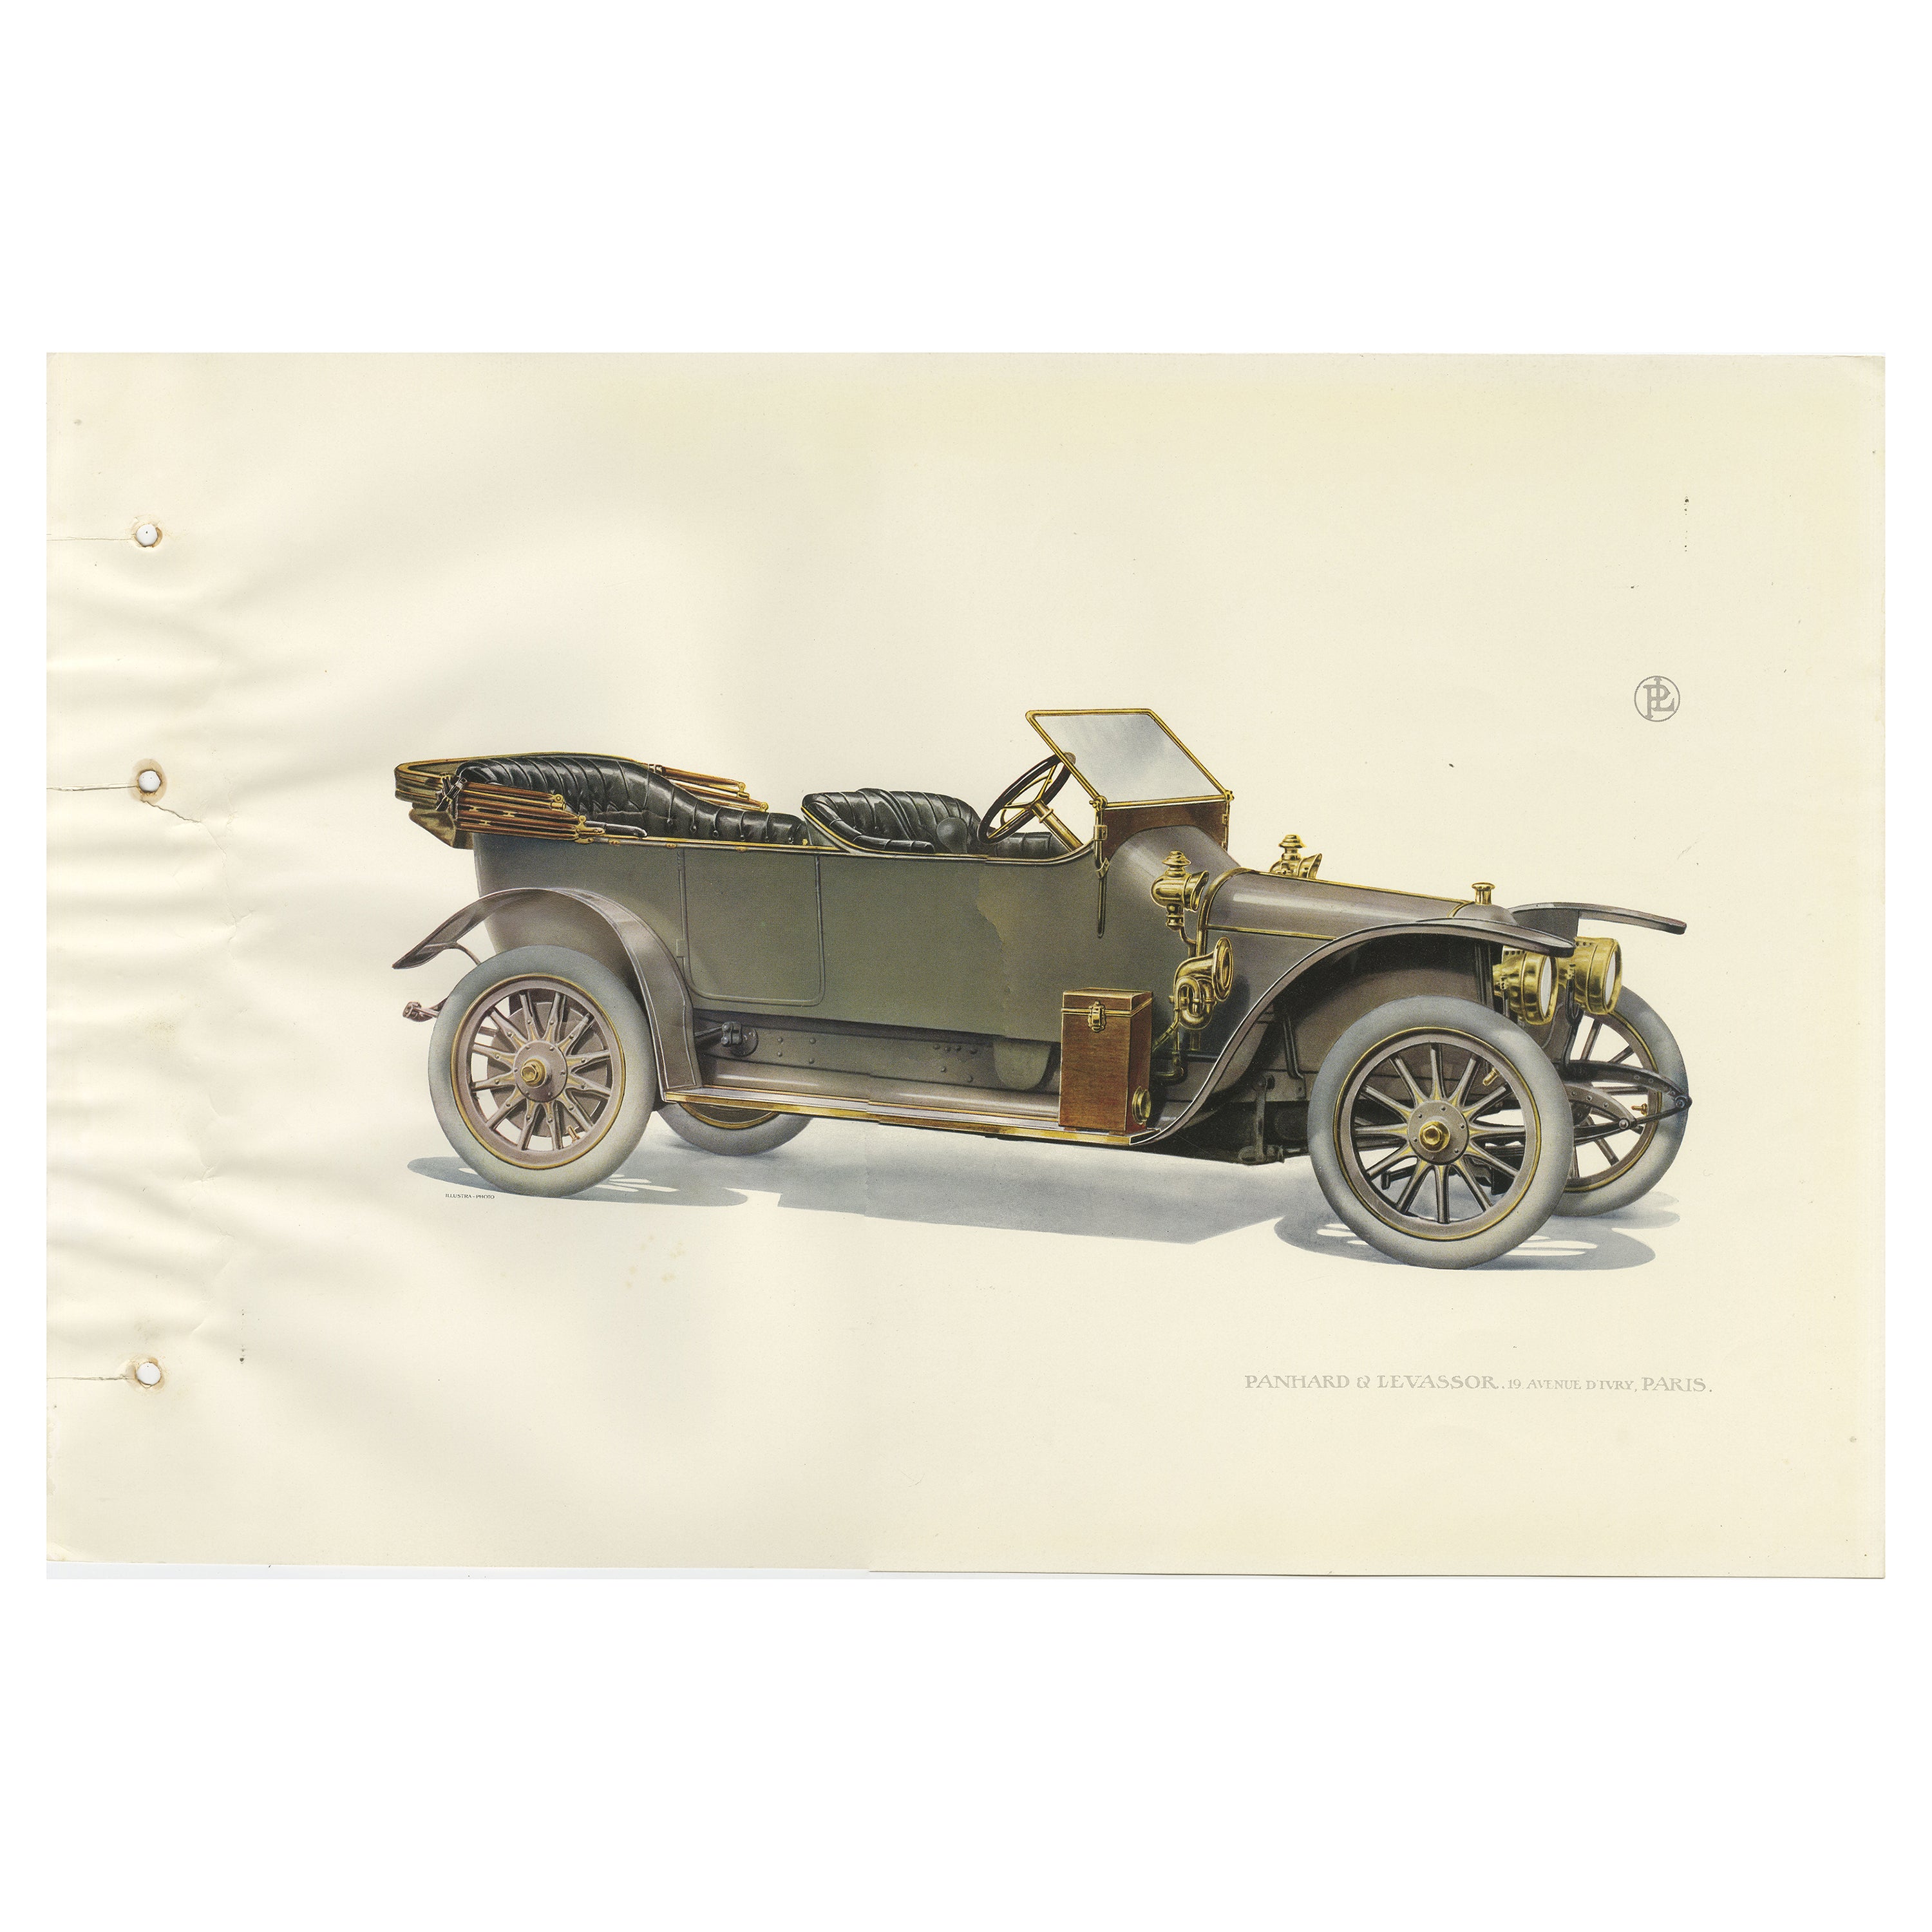 Antique Print of the Panhard et Levassor Torpedo Car, 1914